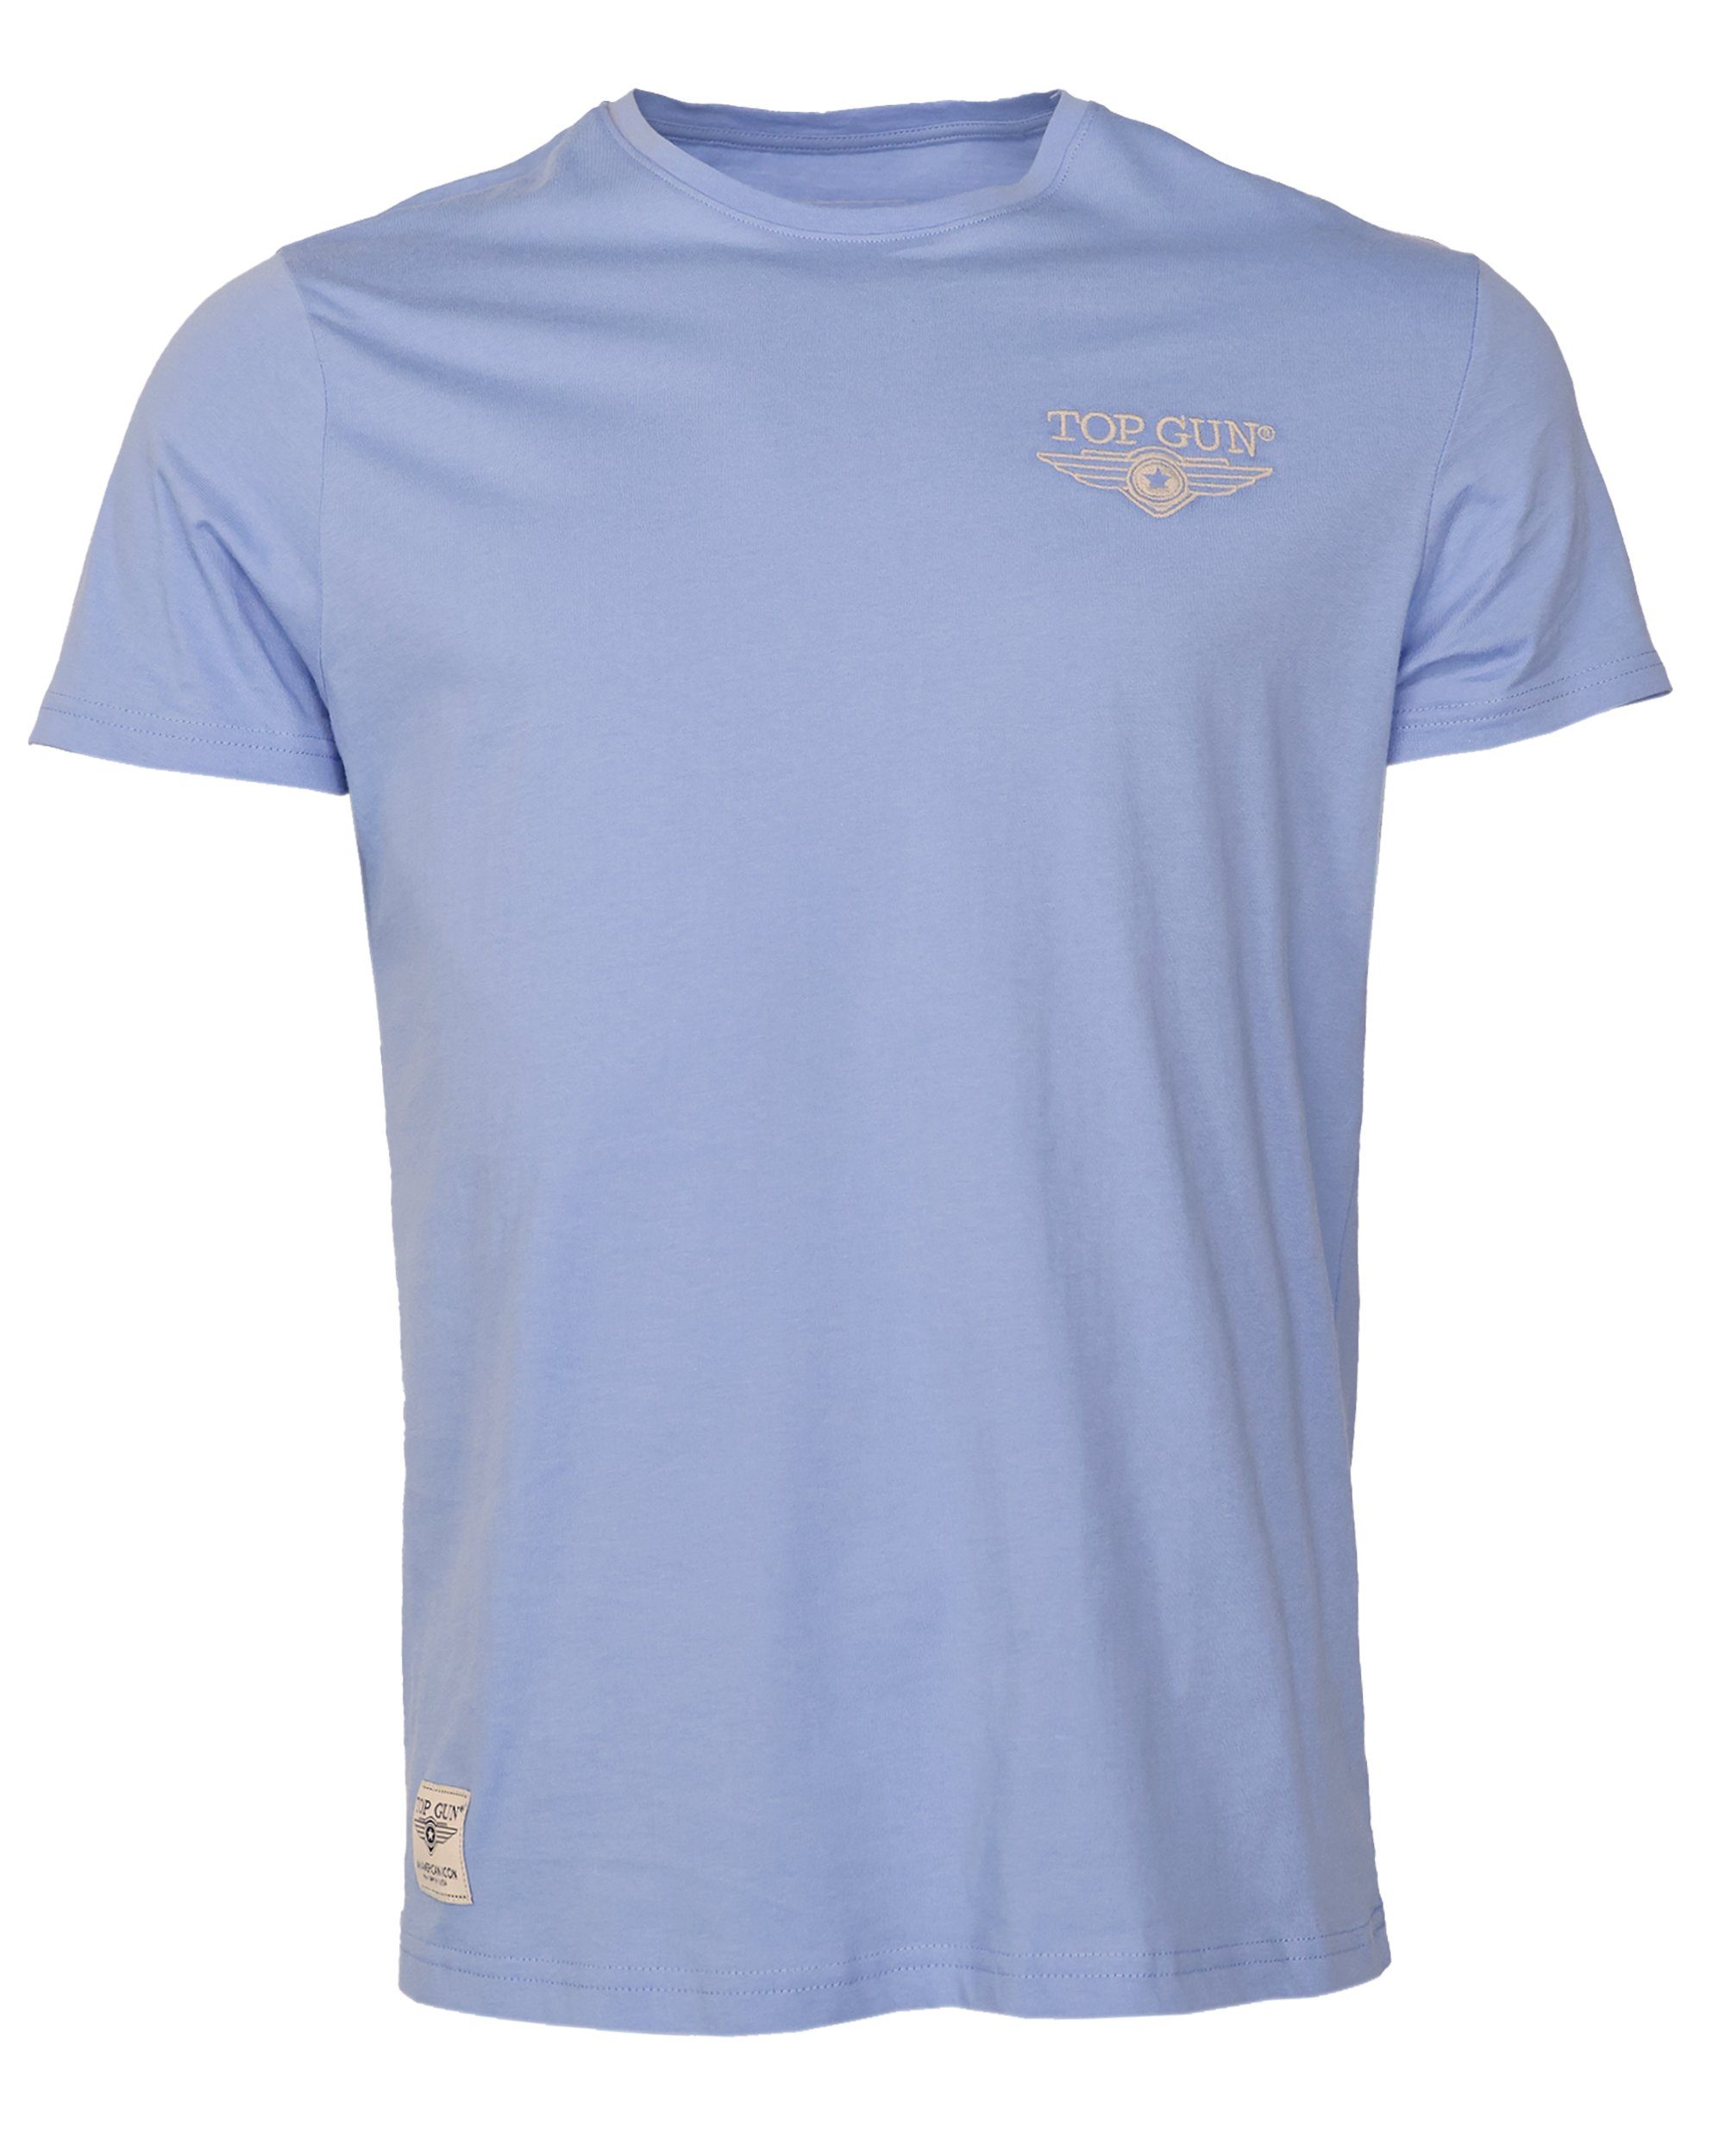 GUN T-Shirt blue TG20213036 light TOP